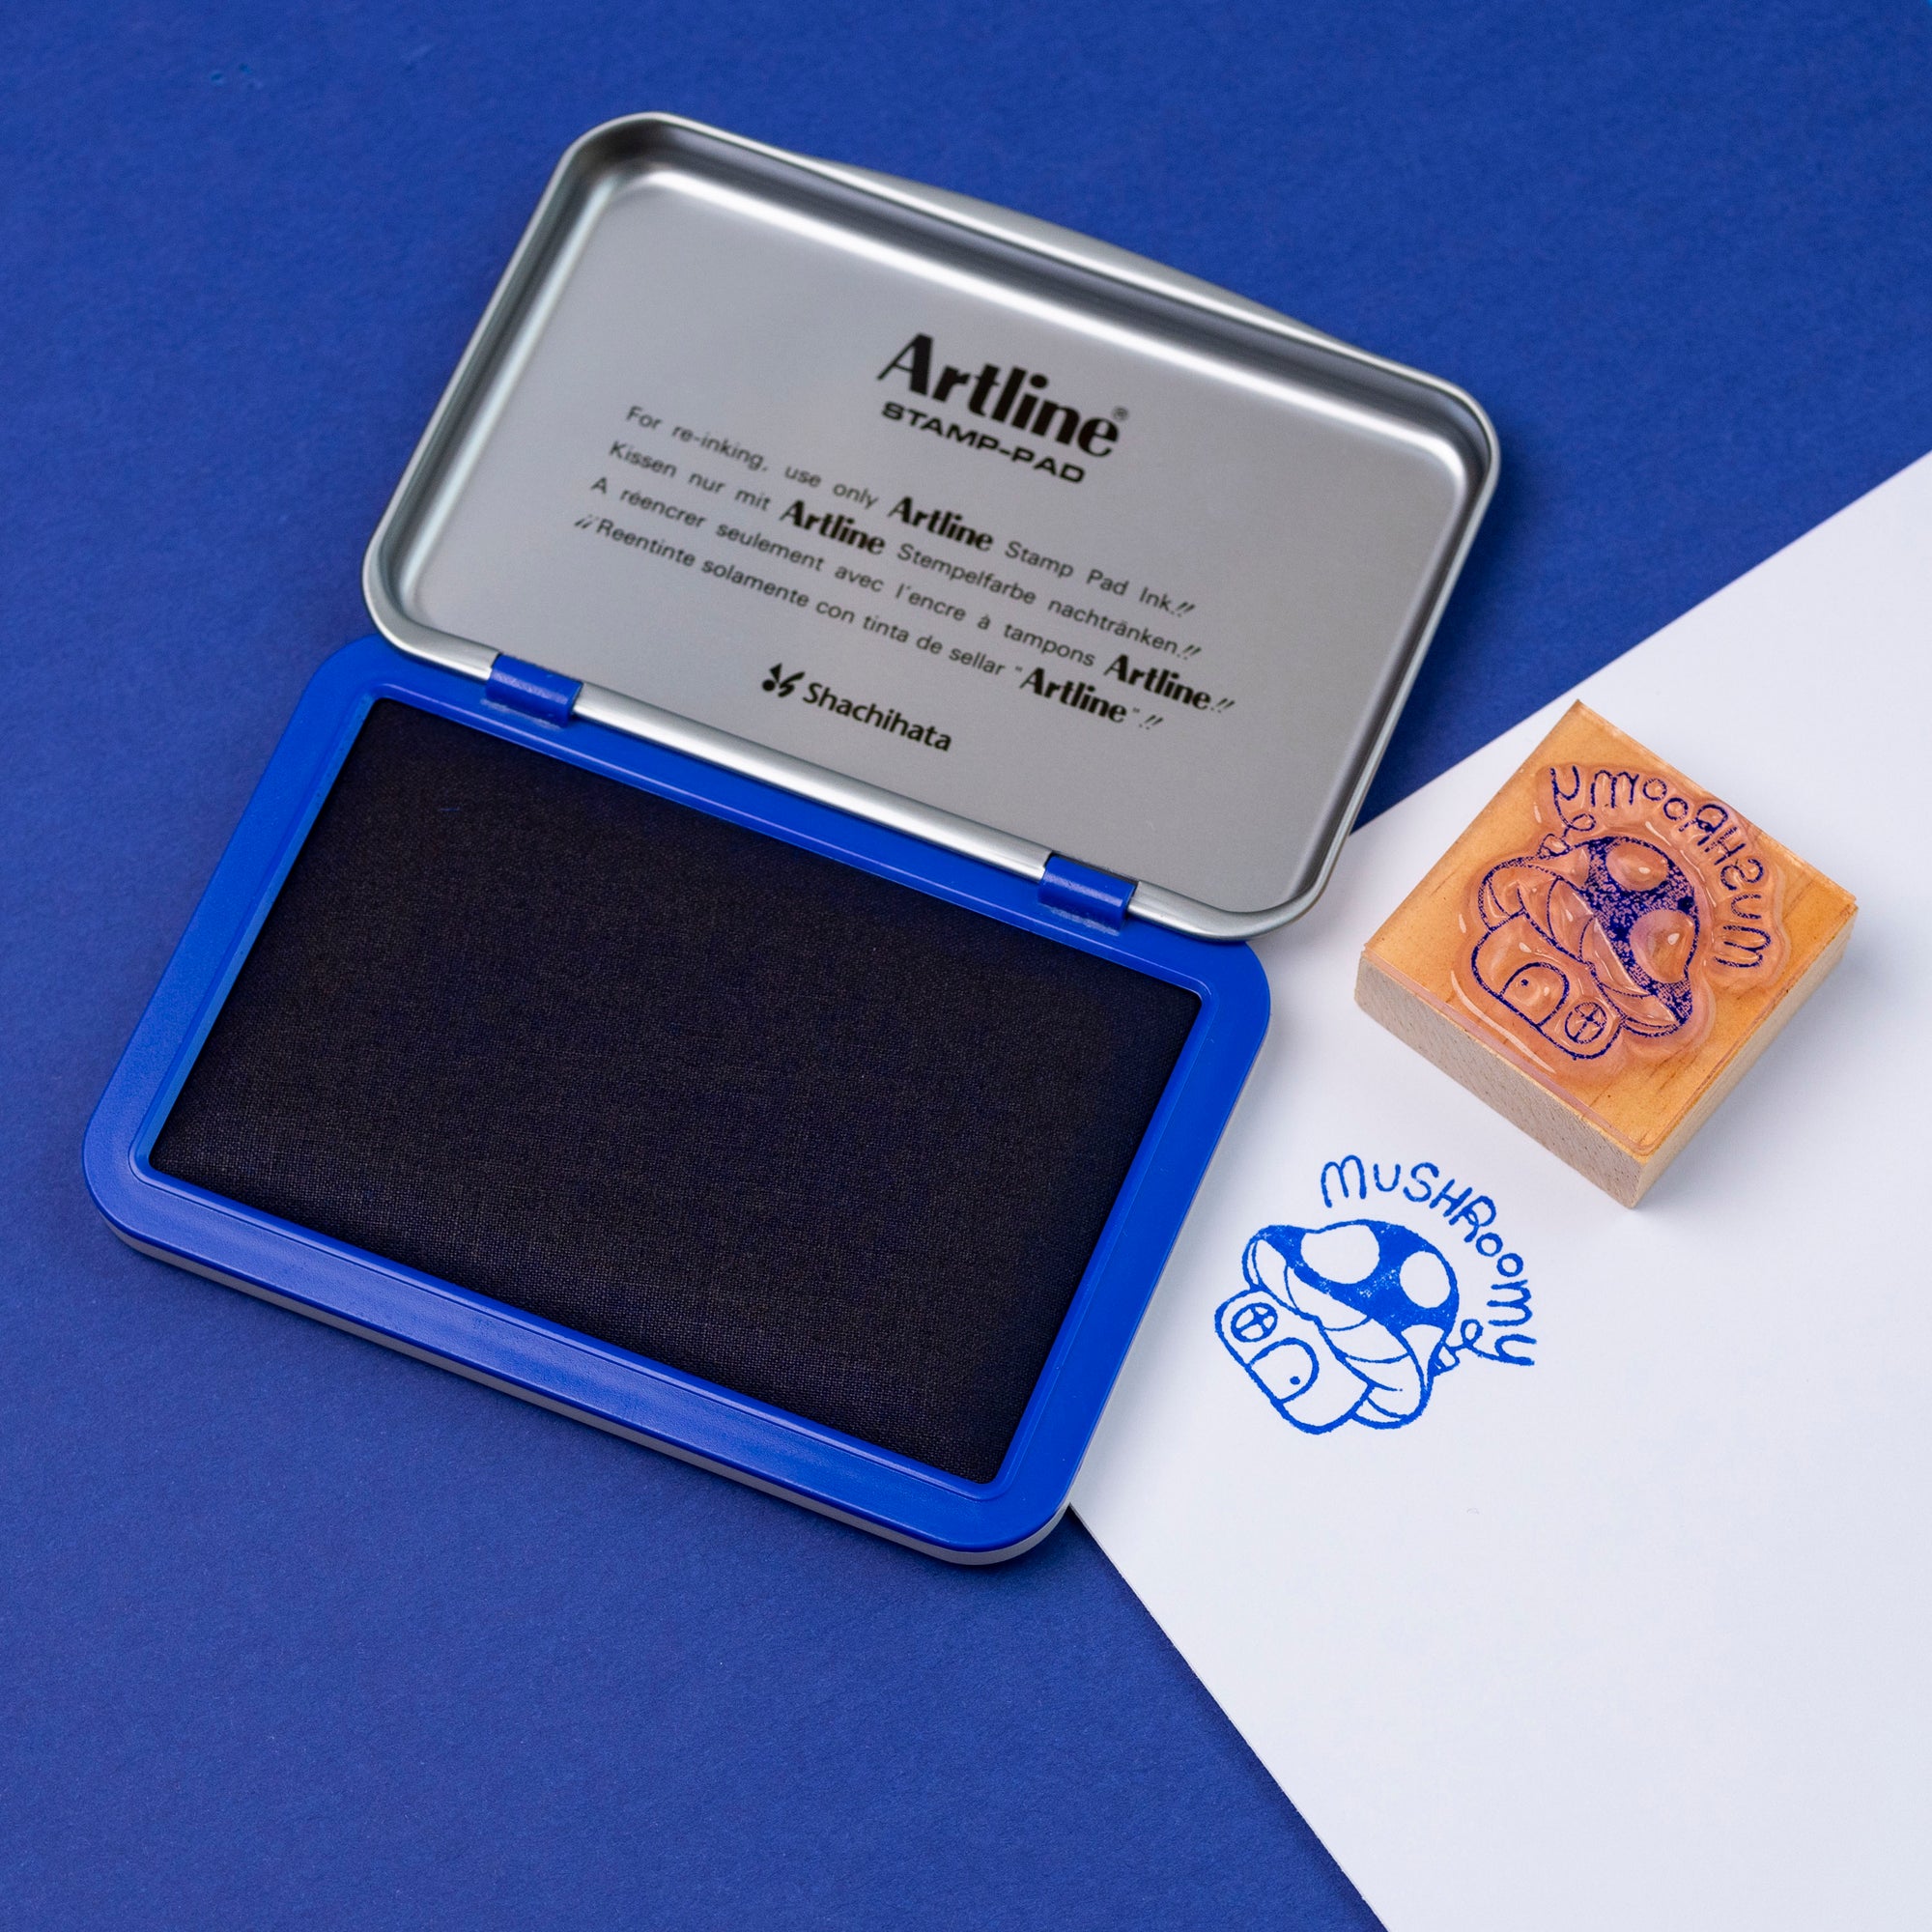 Artline EHJ Stamp Pad – Samima